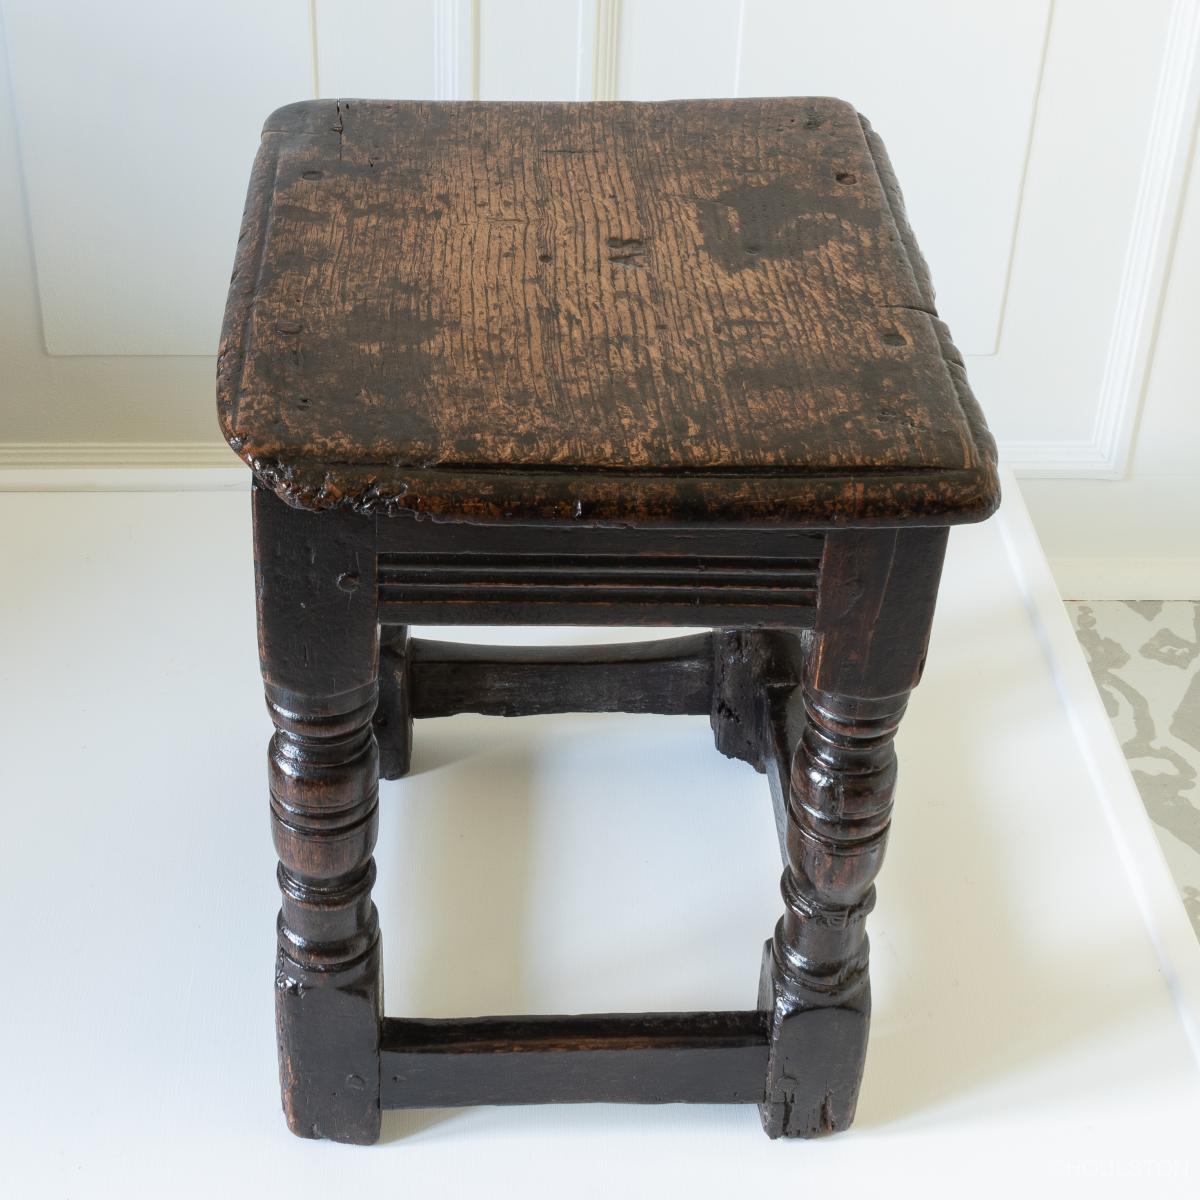 An early 17th century low oak stool